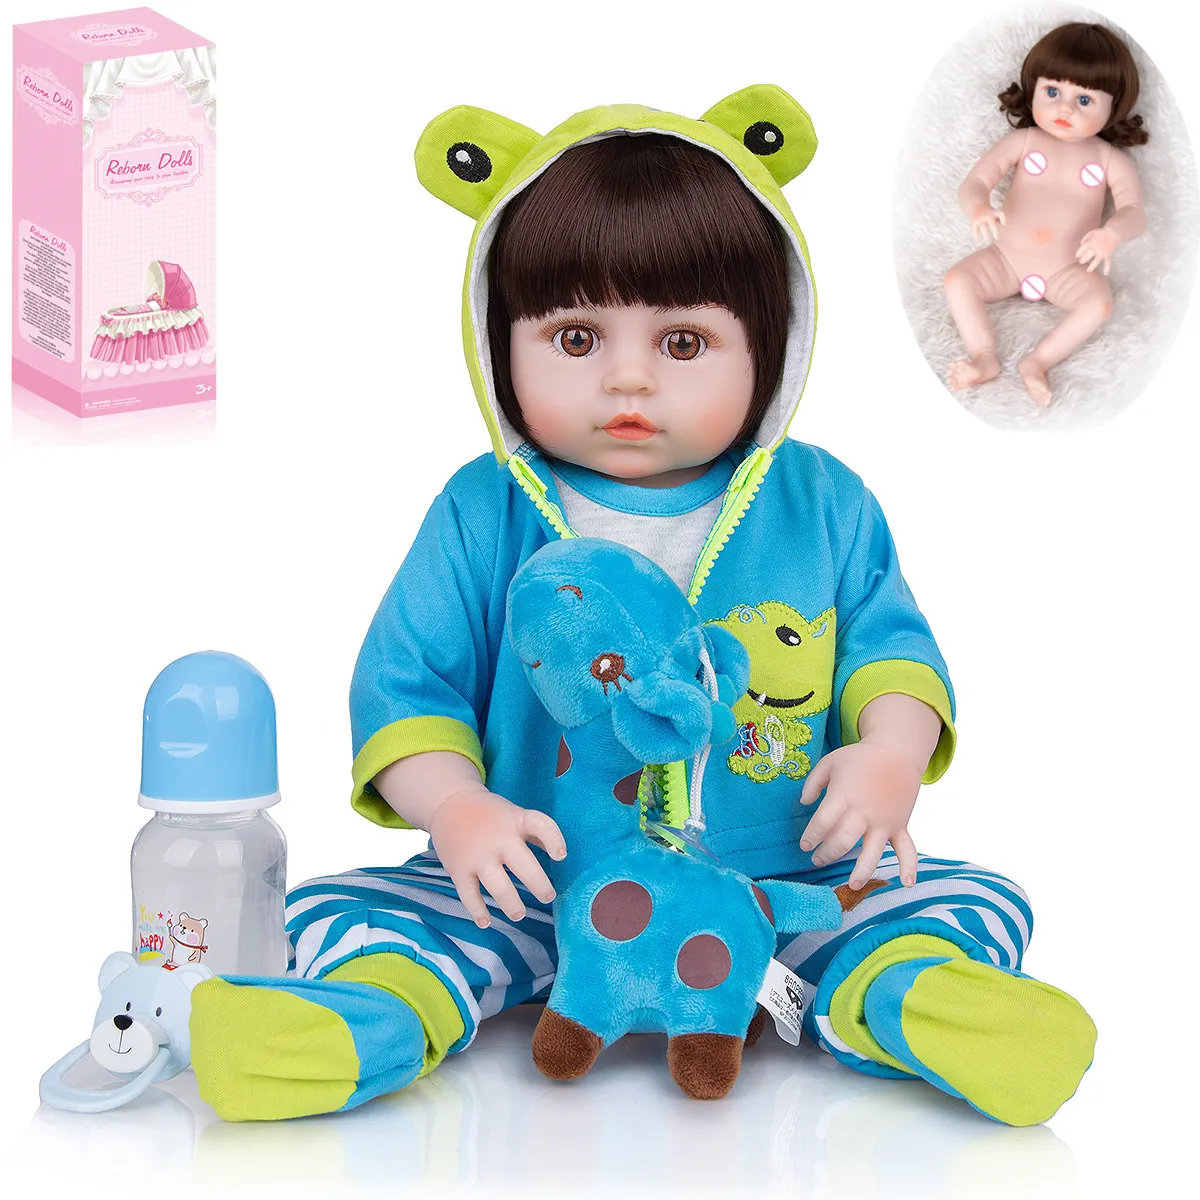 13.5 inch Realistic Lifelike Newborn Silicone Real Sleeping Reborn Baby Dolls Boy Soft Cloth Body Gift Set Kids Girls Boy Toys